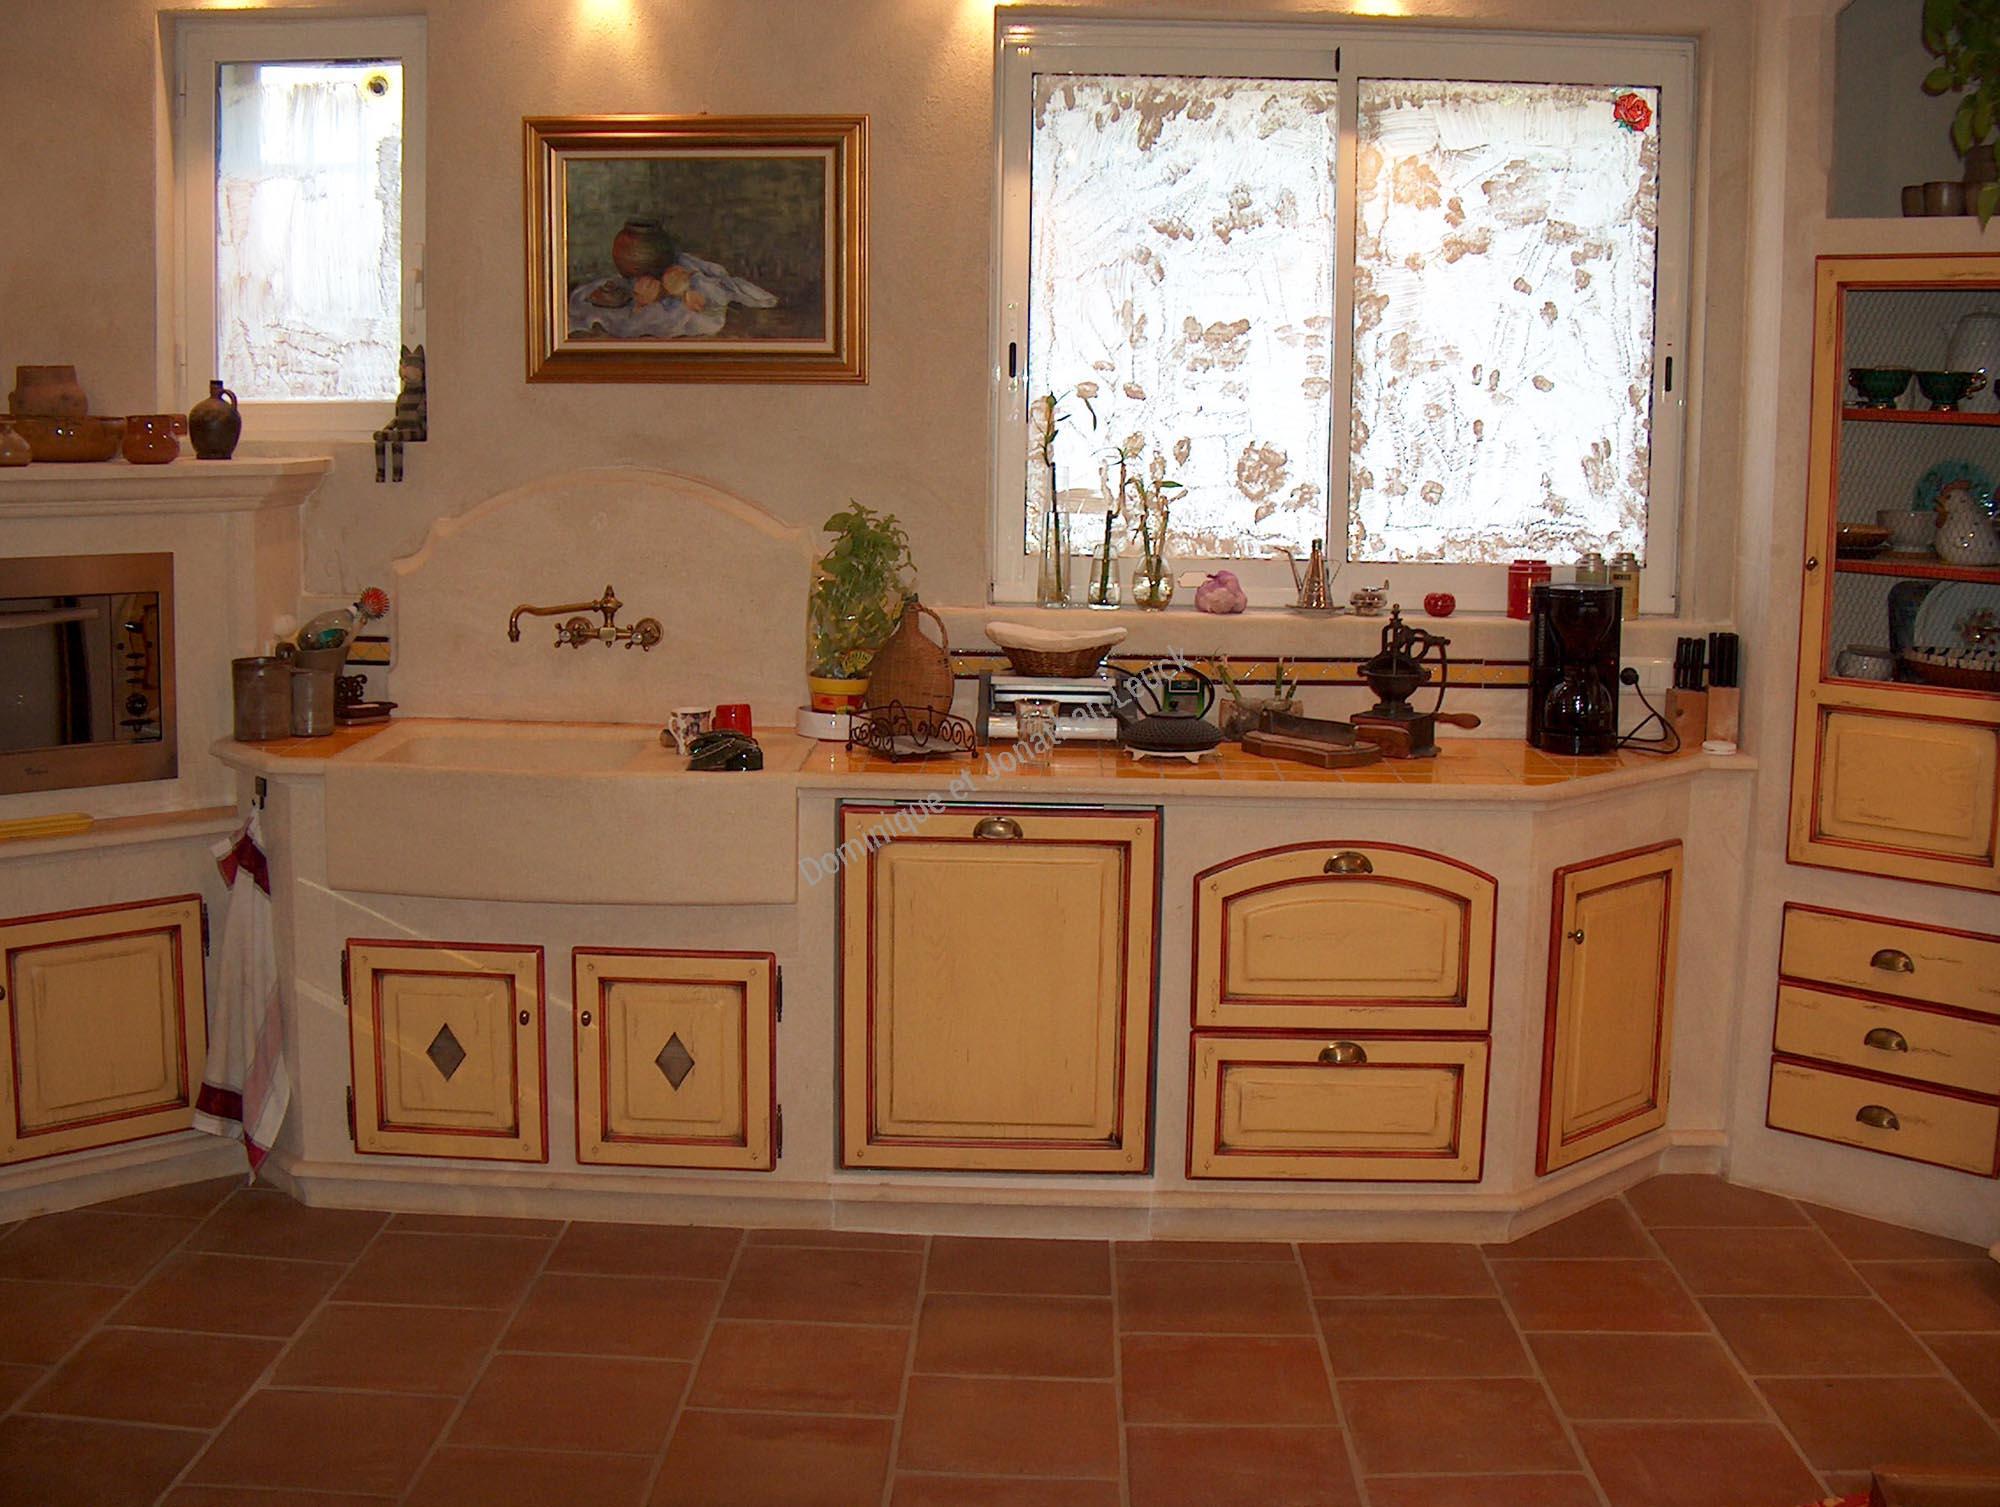 Création d'un cuisine Provençale en pierre du Luberon sur-mesure dans le Vaucluse